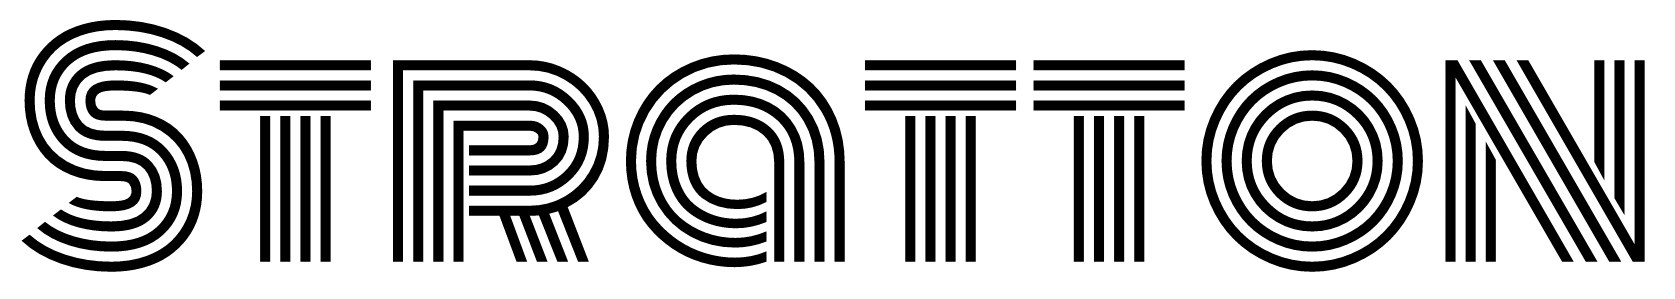 Stratton Logo